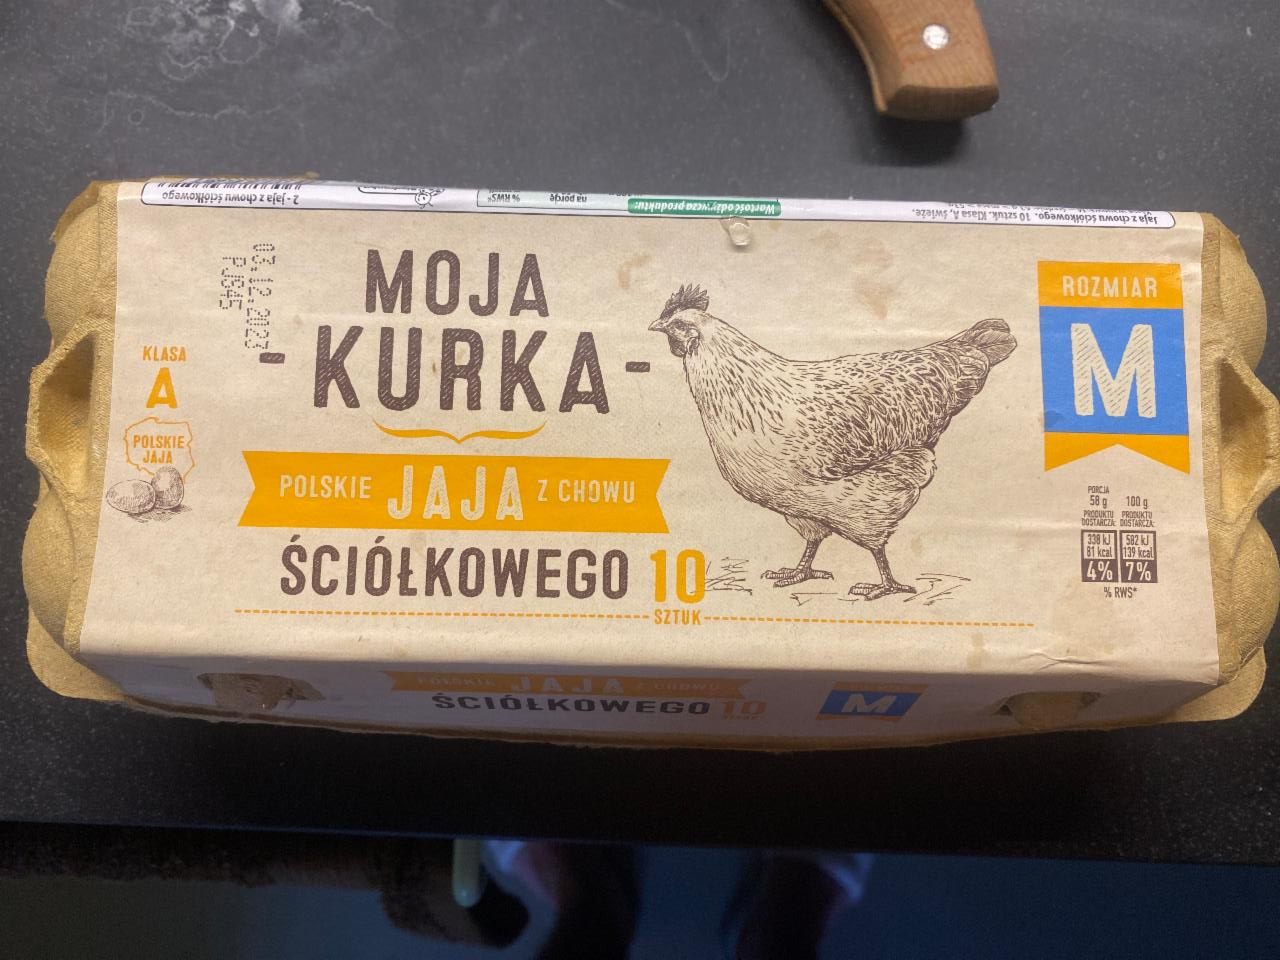 Фото - польские яйца M Moja kurka